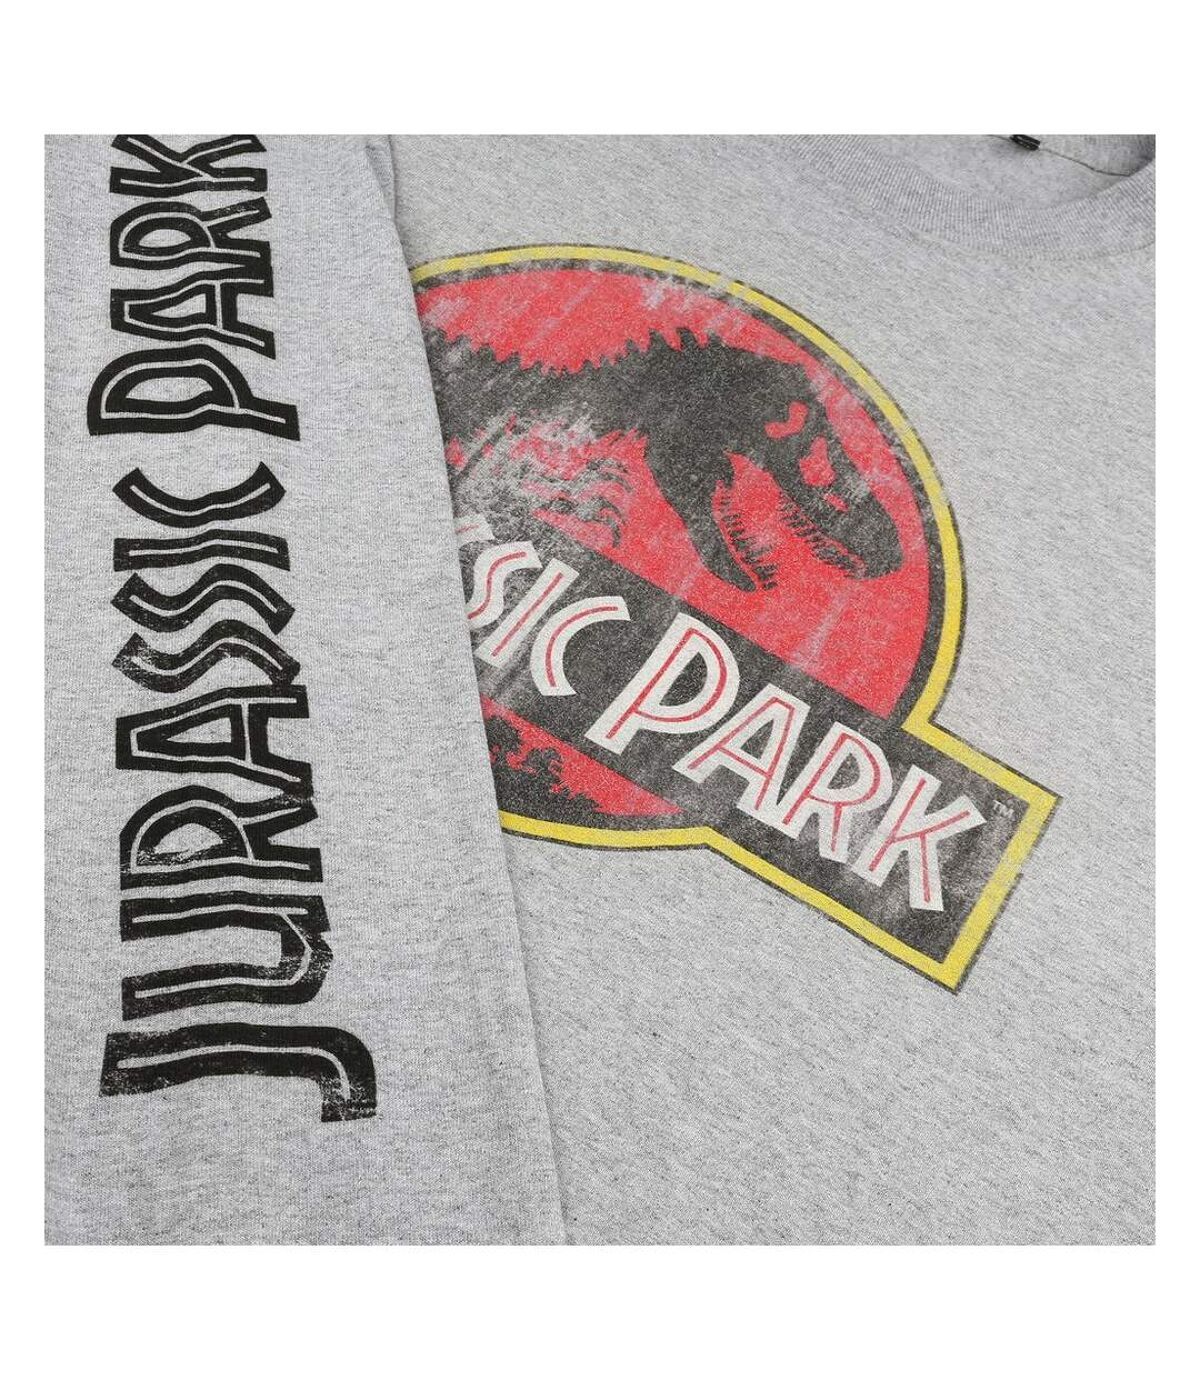 Jurassic Park T-shirt à manches longues avec logo (Gris sportif) - UTTV427